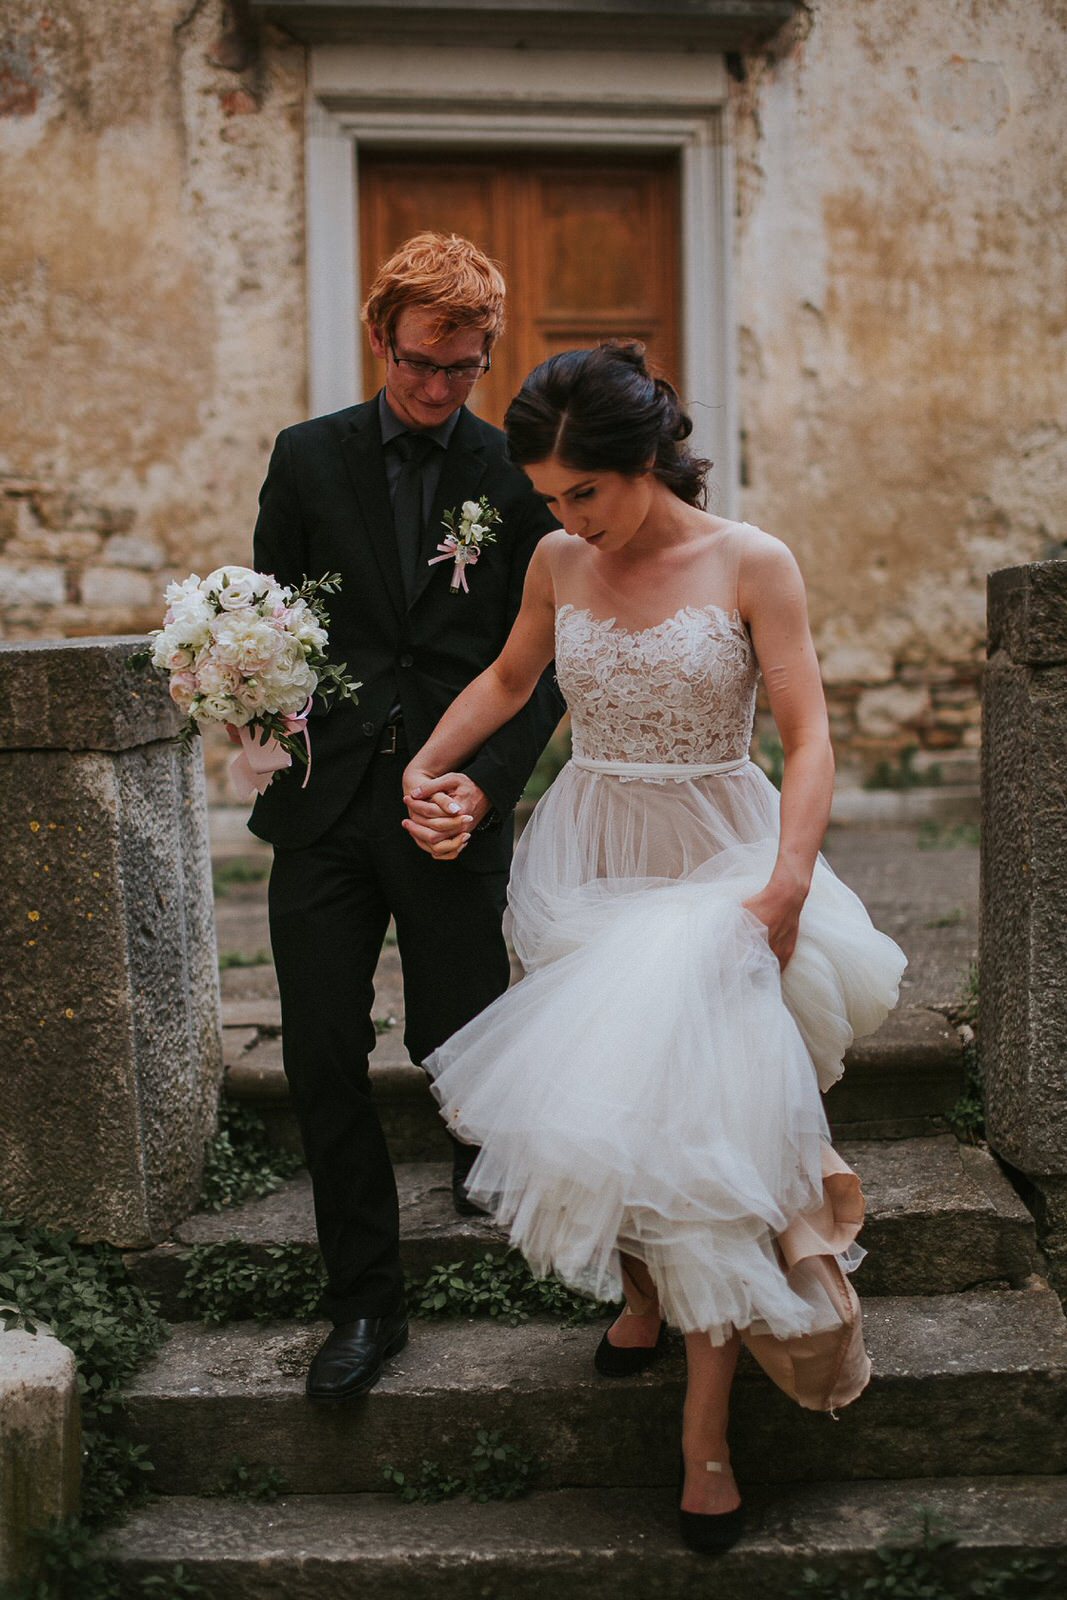 Istria wedding photographer_Dalibora_Bijelic_0064.jpg